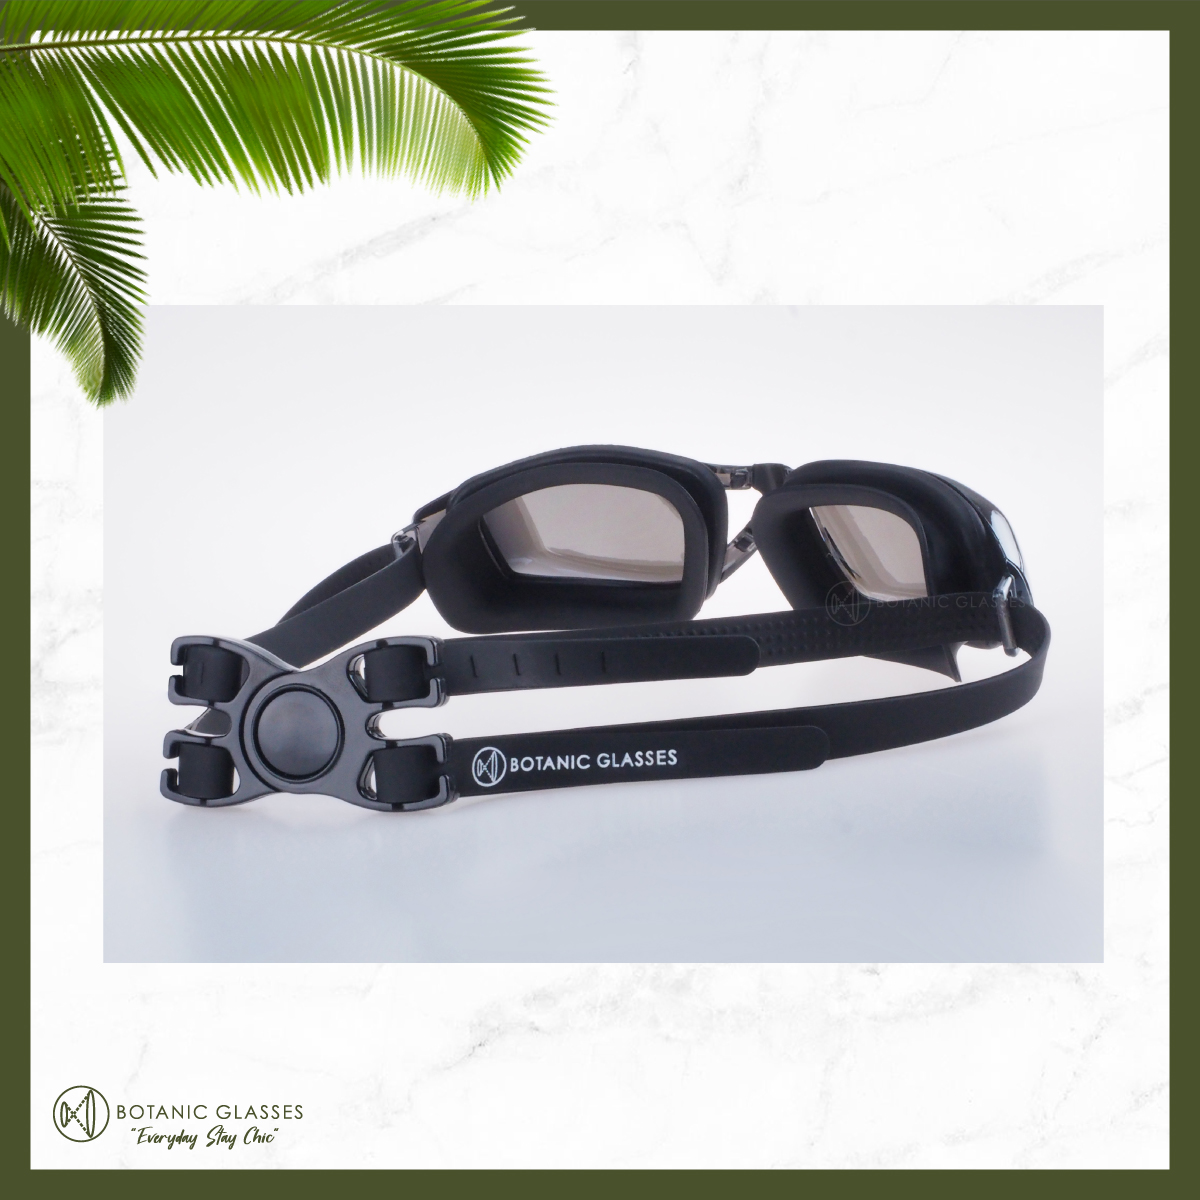 ภาพที่ให้รายละเอียดเกี่ยวกับ แว่นกันน้ำ สายตาสั้น 150 ถึง 800 แว่นว่ายน้ำ ของแท้ Botanic Glasses กัน UV 99% แว่นตาว่ายน้ำ Free กล่องแว่น